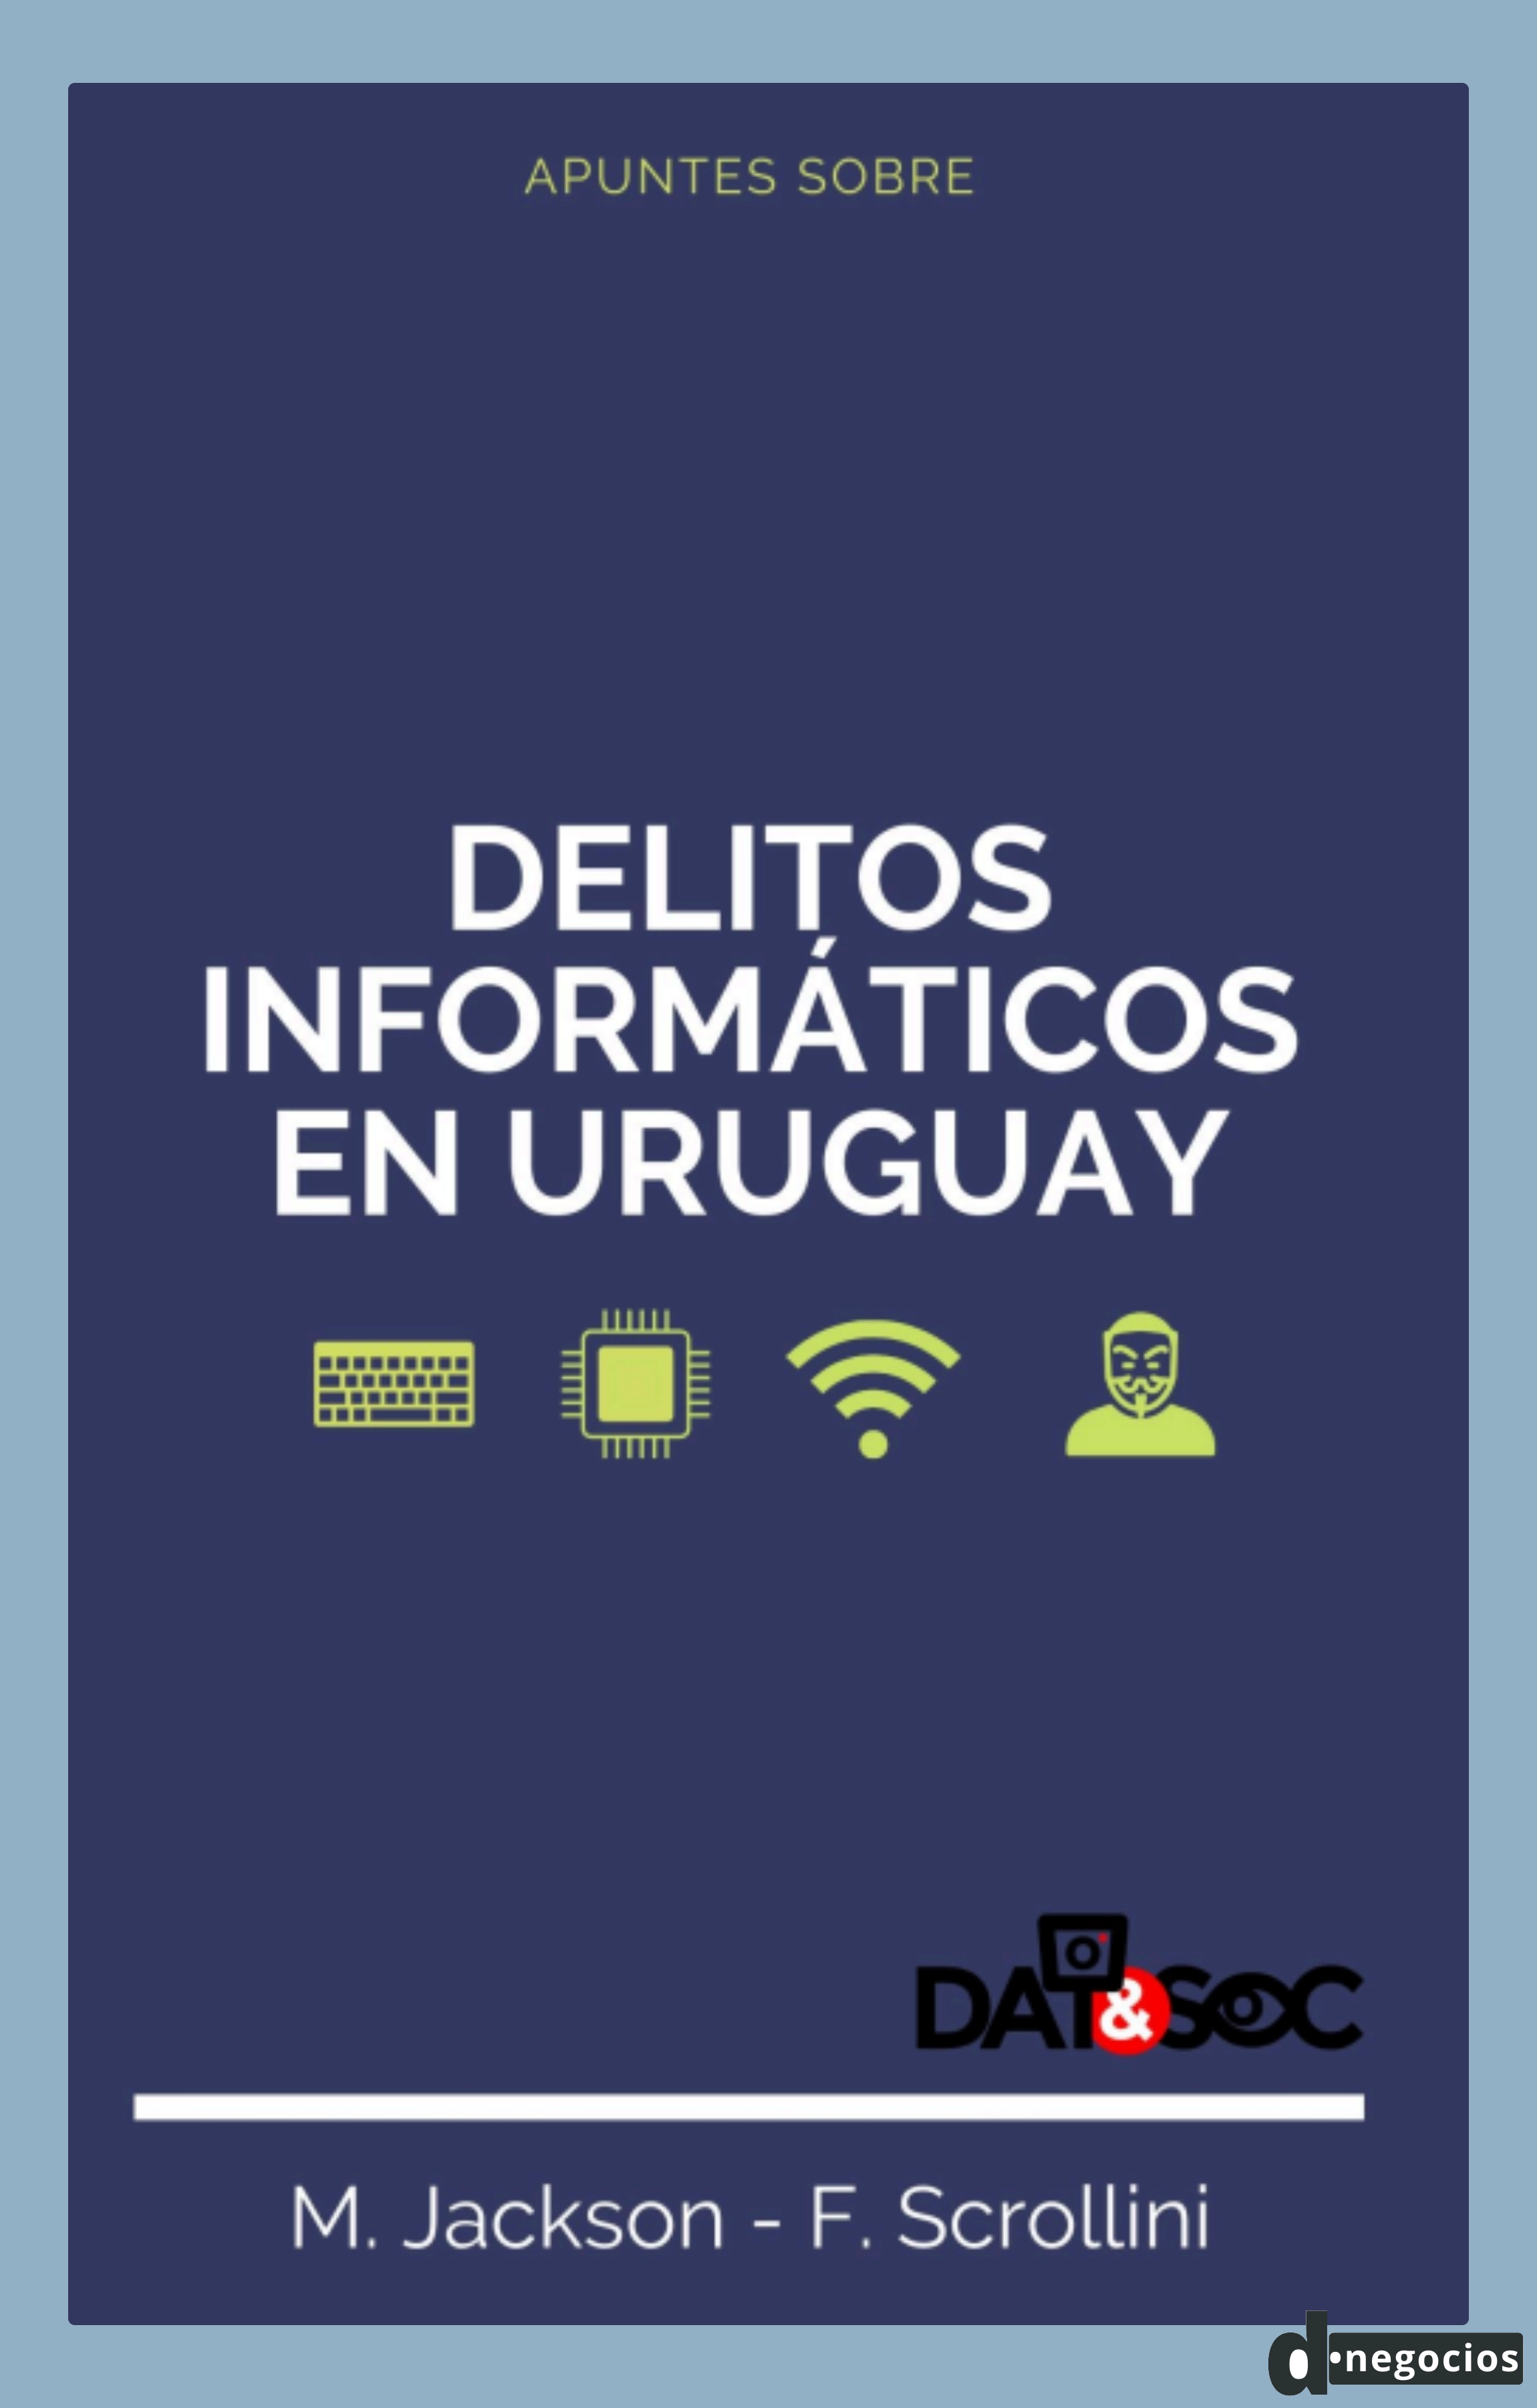 Informe de DATYSOC sobre los delitos informáticos en Uruguay.